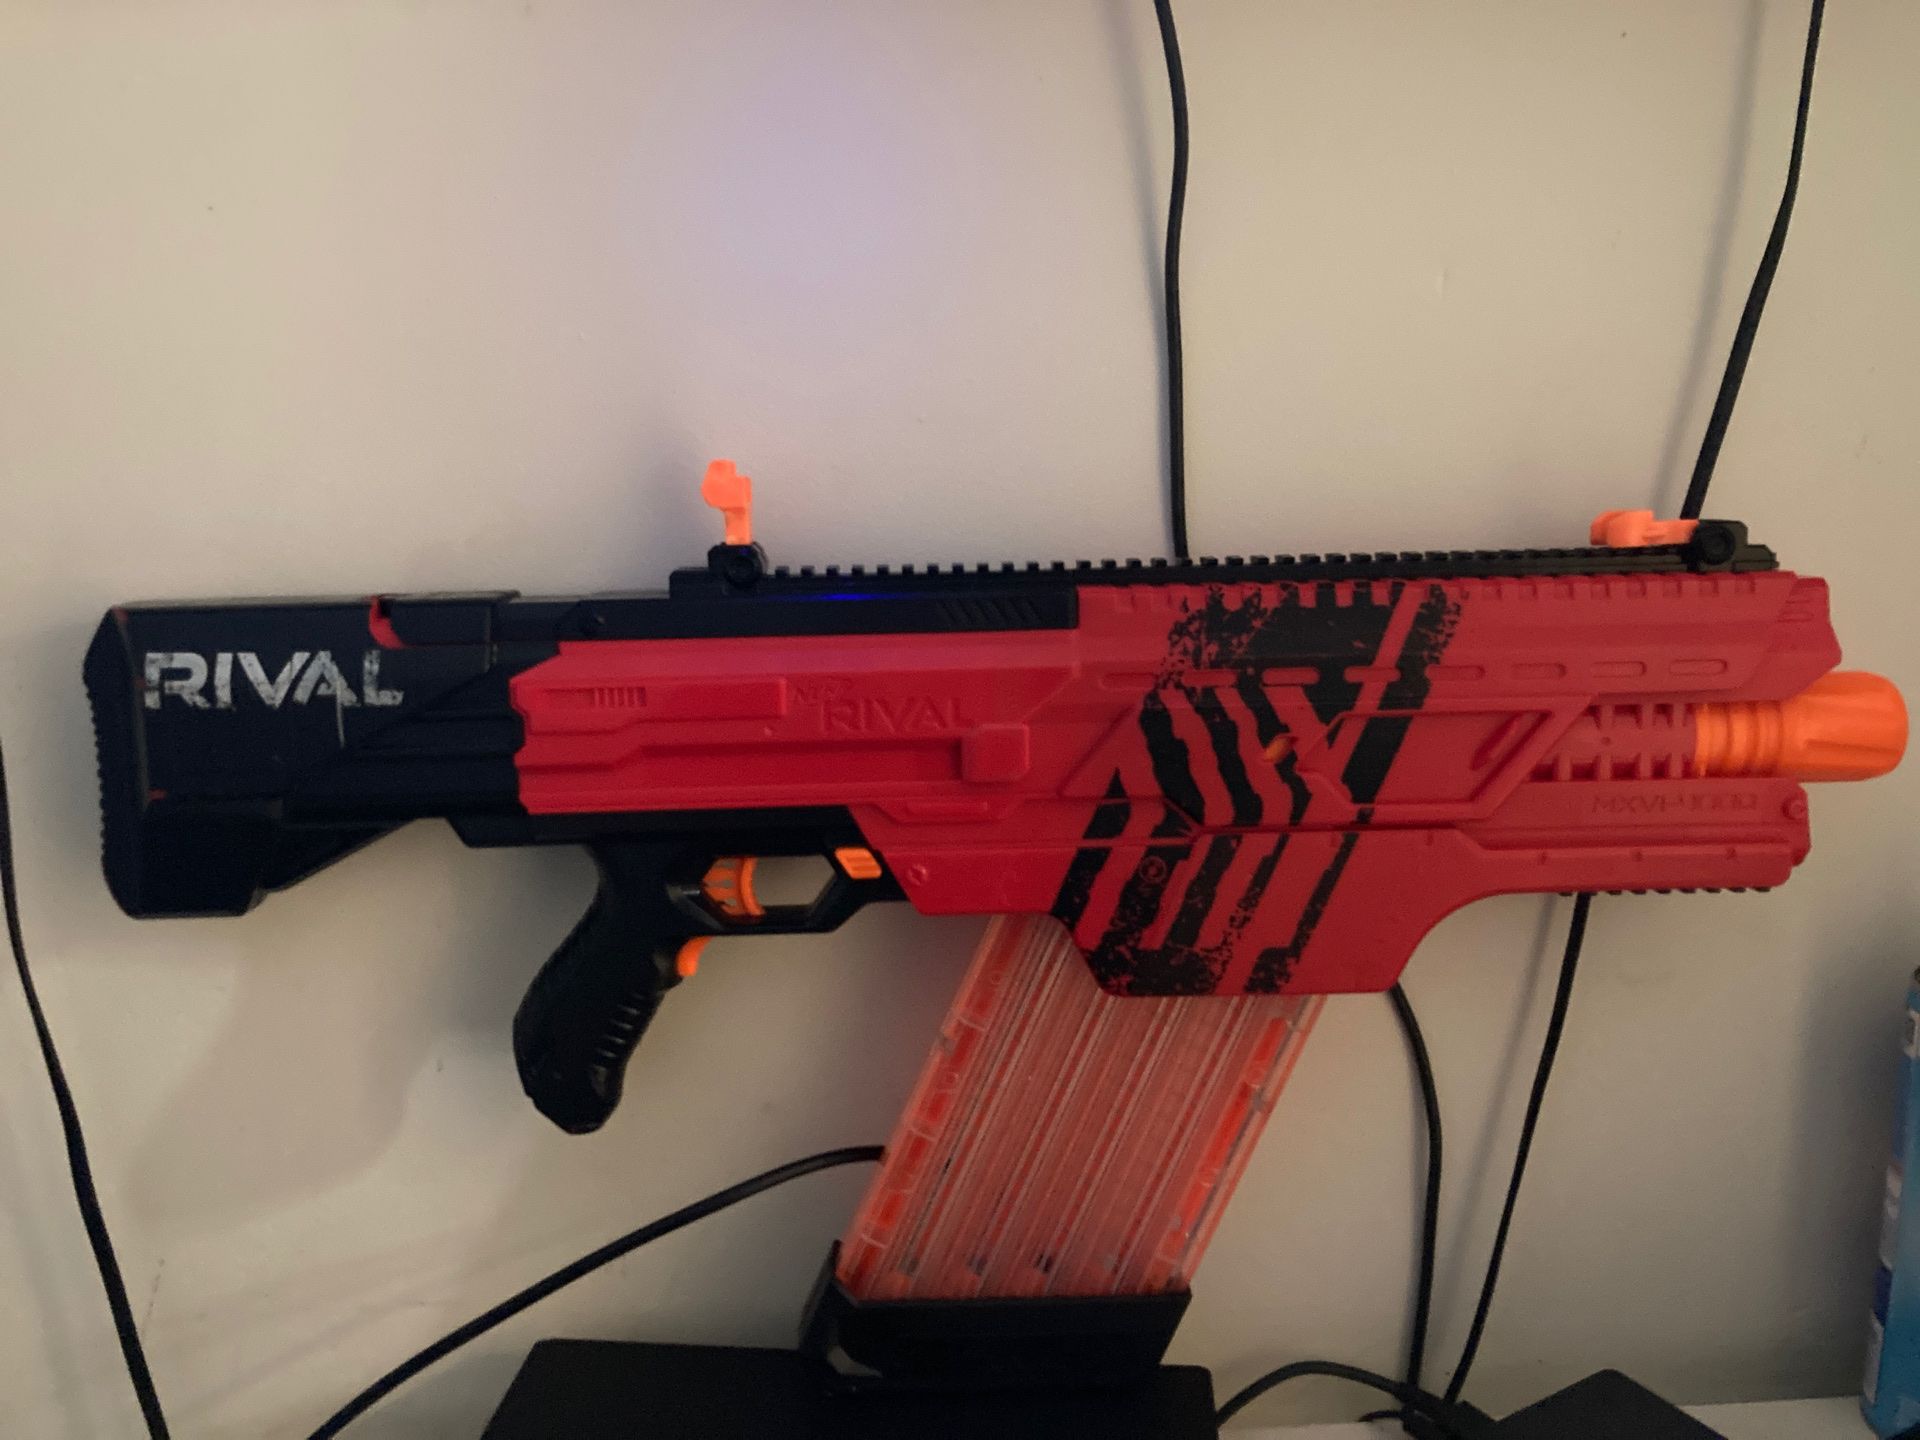 Rival Nerf gun